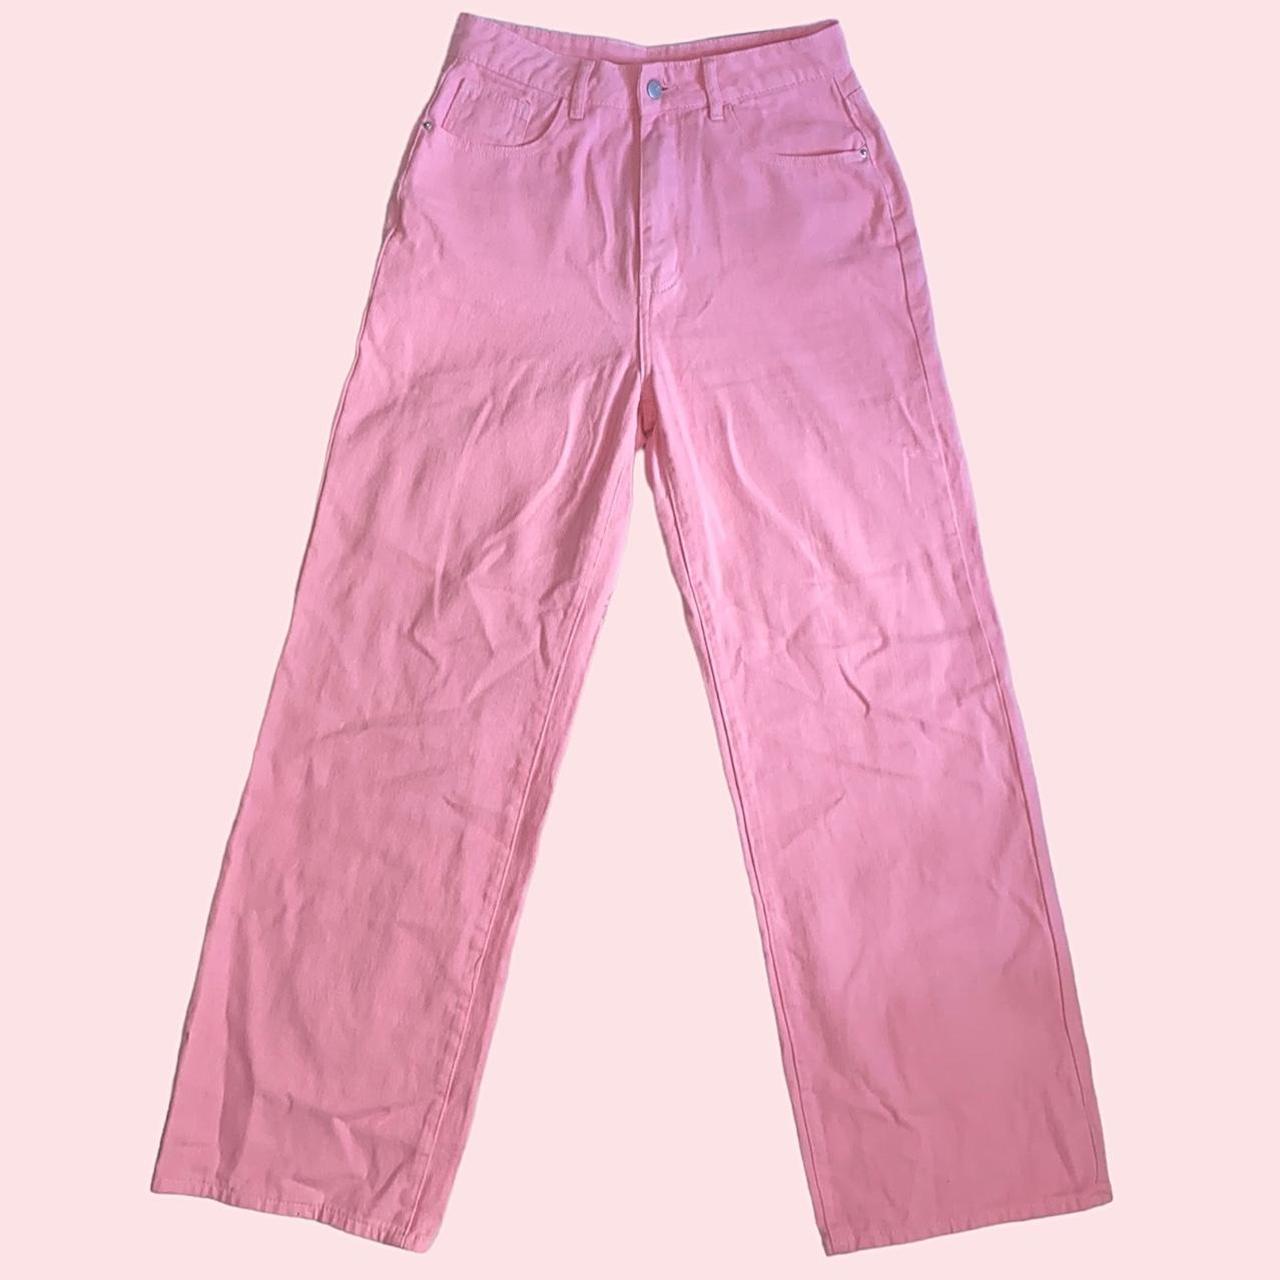 Romwe Women's Pink Trousers (2)